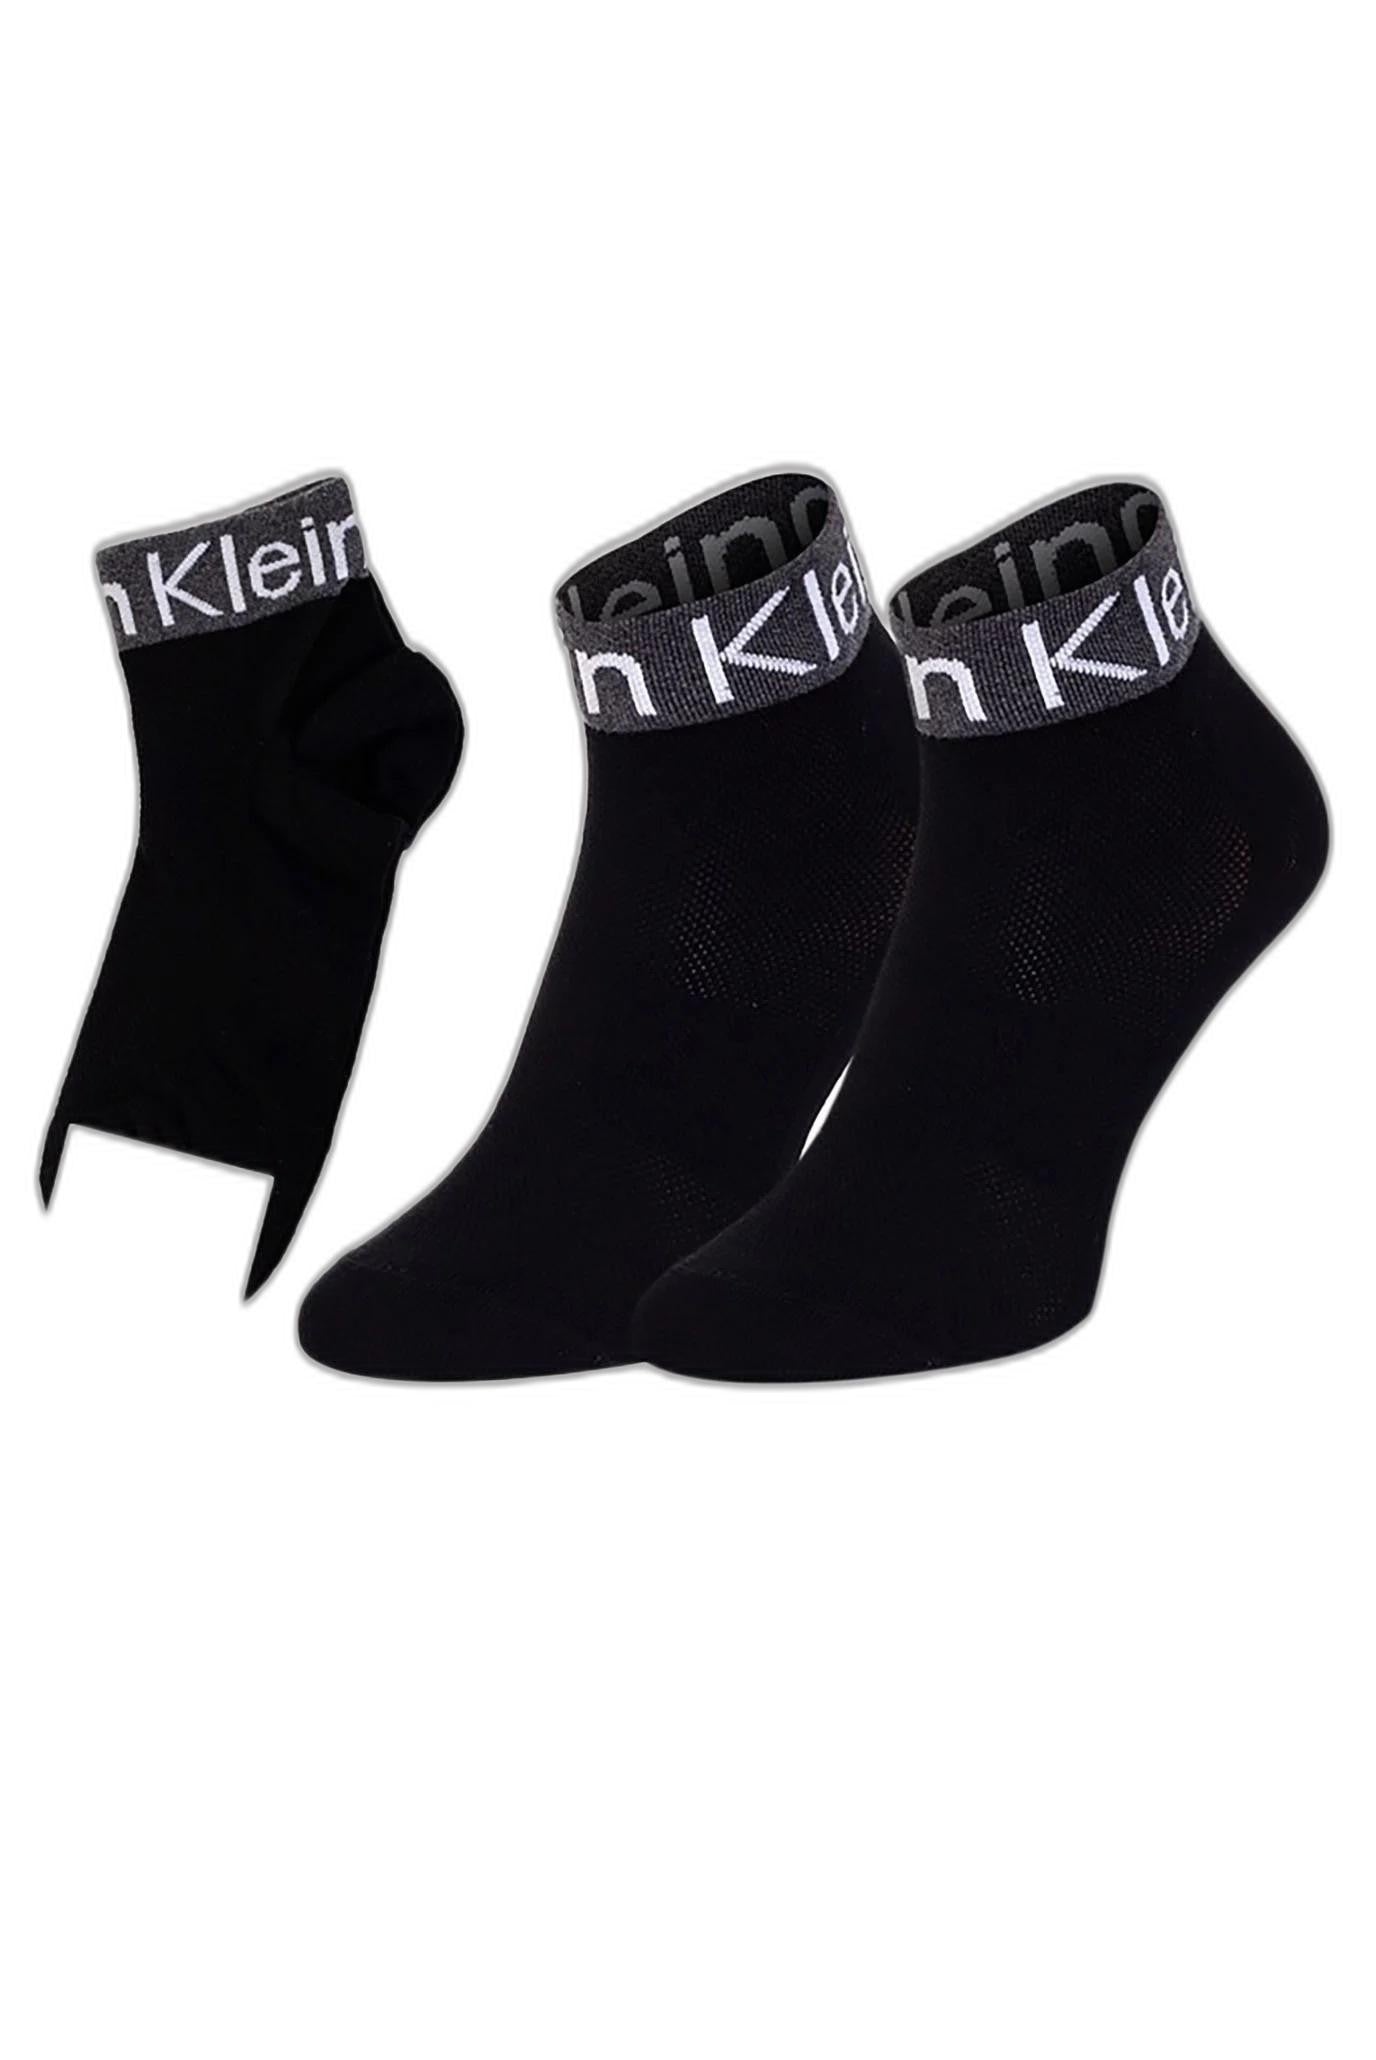 Marchio: Calvin Klein - Genere: Donna - Tipologia: Intimo - Stagione: Autunno/InColore: nero, Taglia: unica